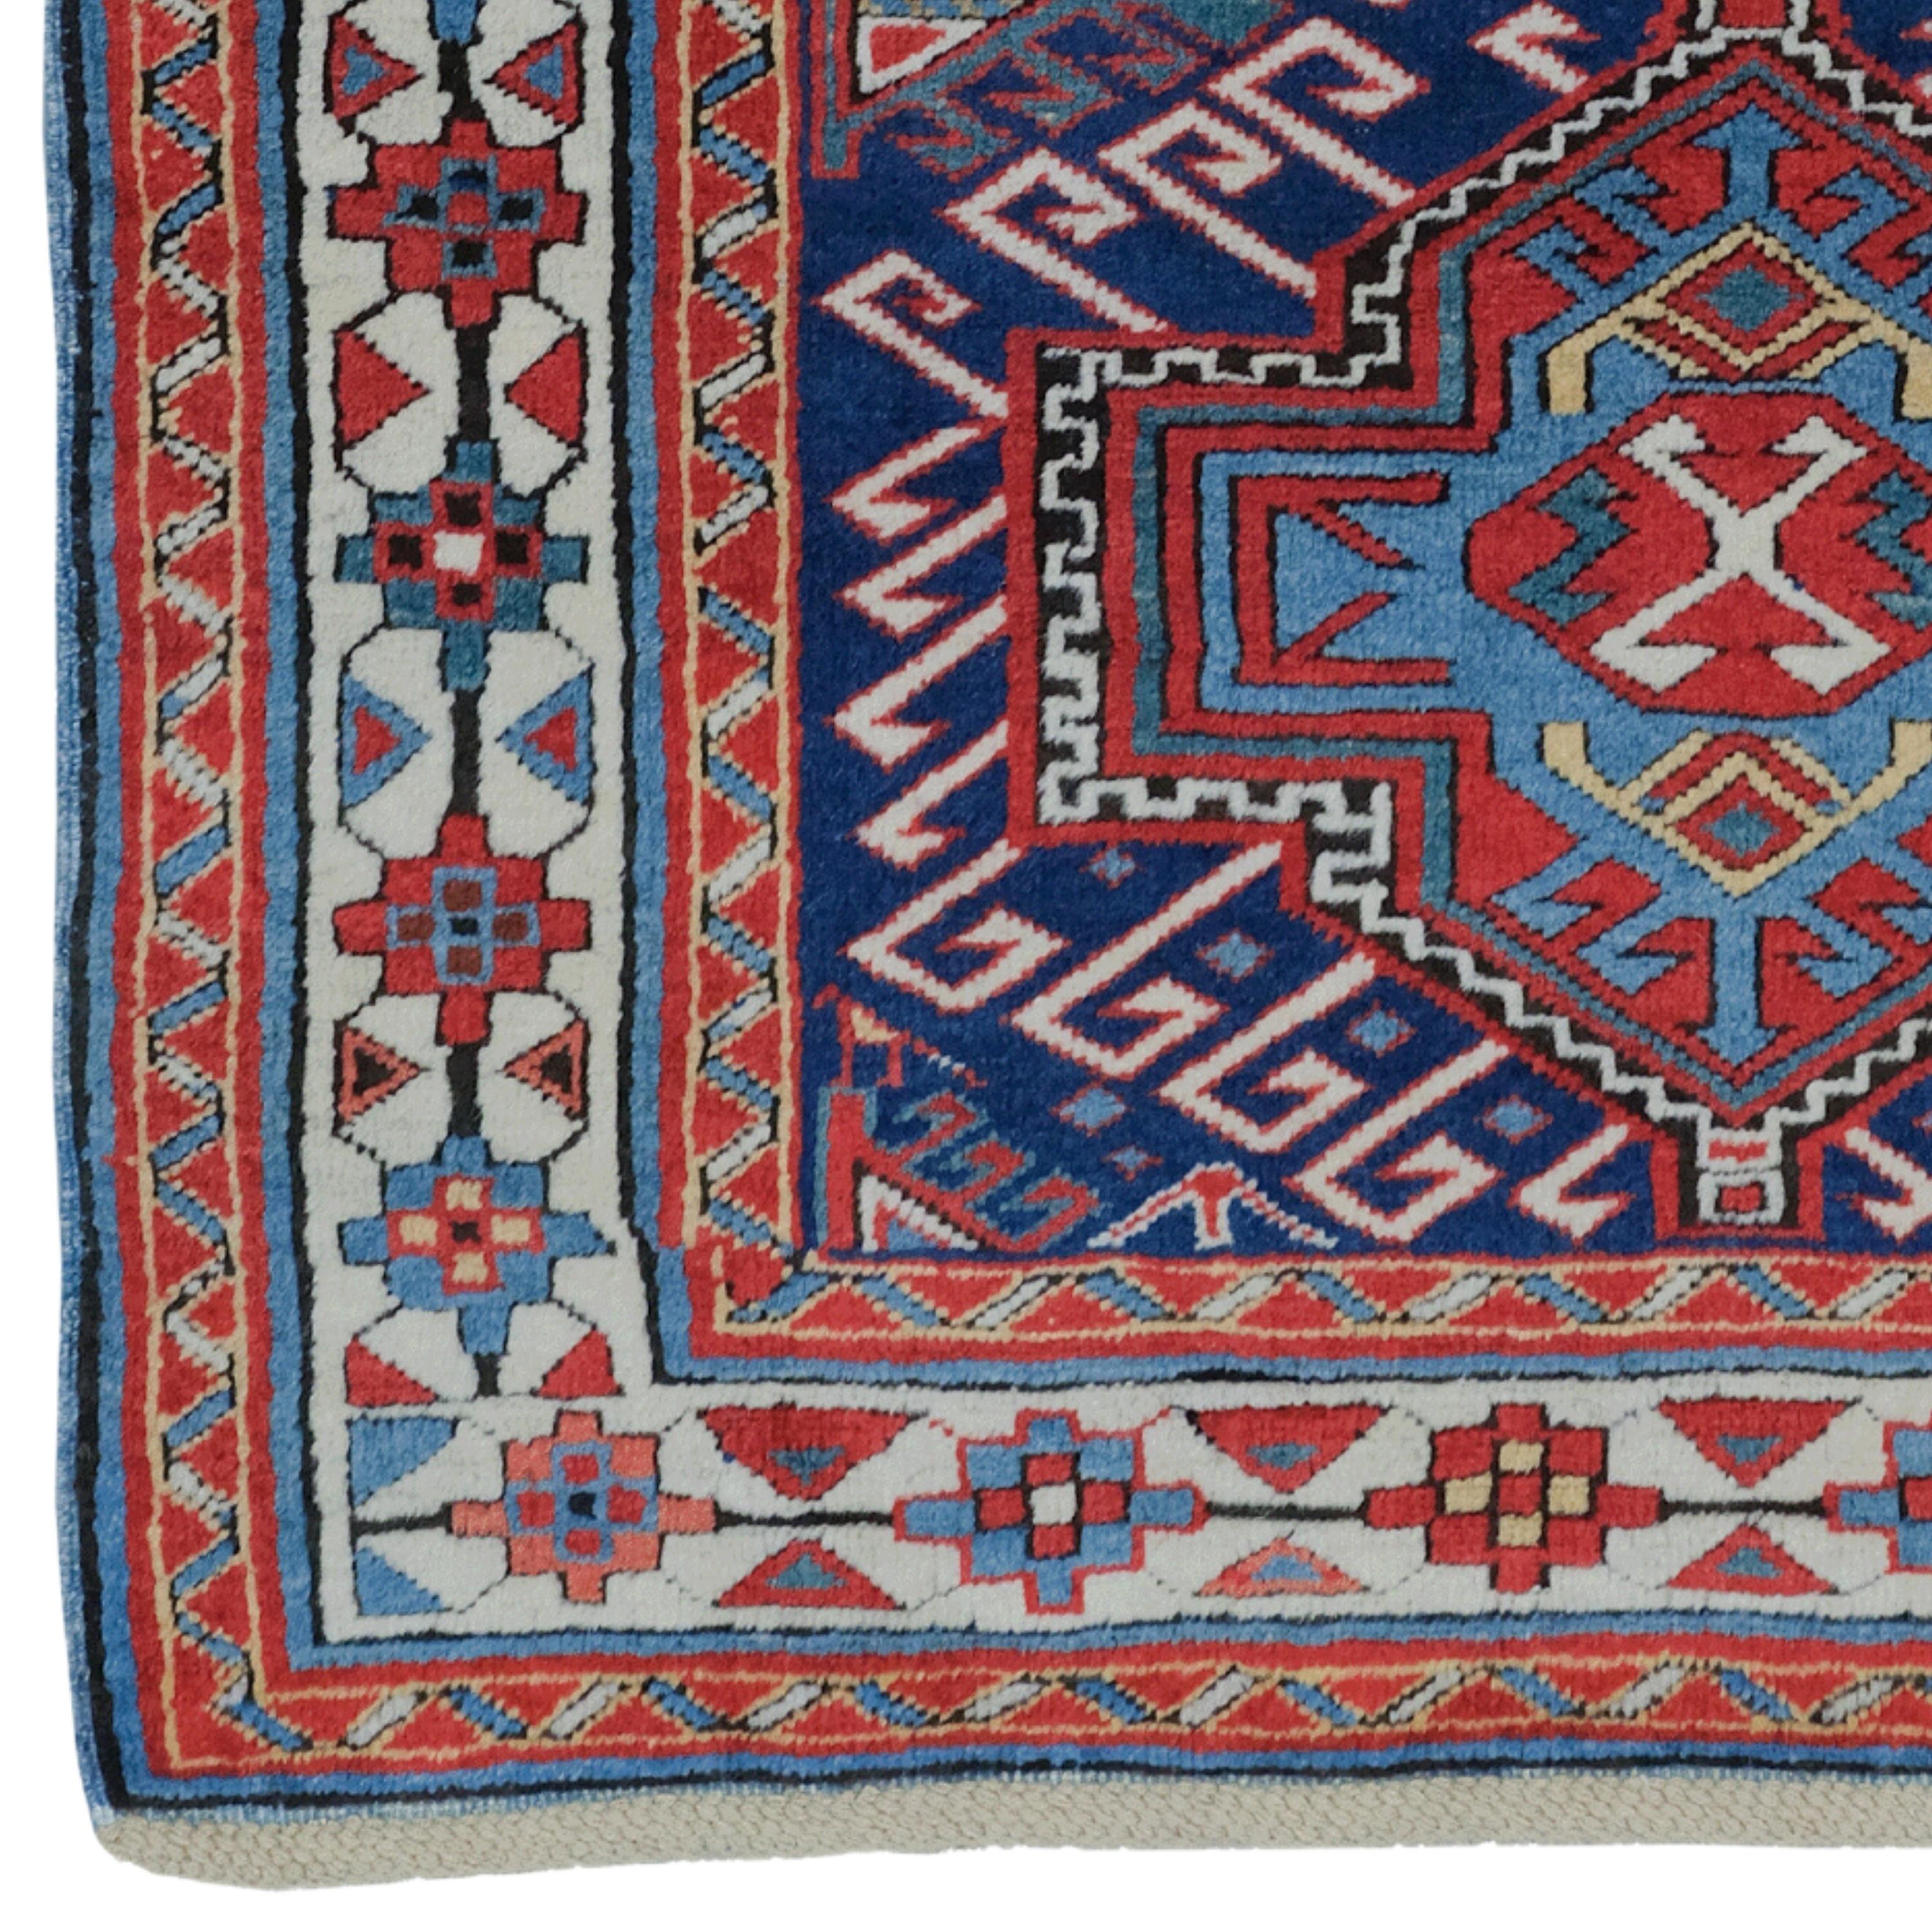 Ein historisches Erbe: Antiker kaukasischer Akstafa-Teppich vom Ende des 19. Jahrhunderts

Wenn Sie Ihr Zuhause historisch und künstlerisch aufwerten wollen, ist dieser antike Teppich genau das Richtige für Sie. Dieser Teppich ist ein kaukasischer